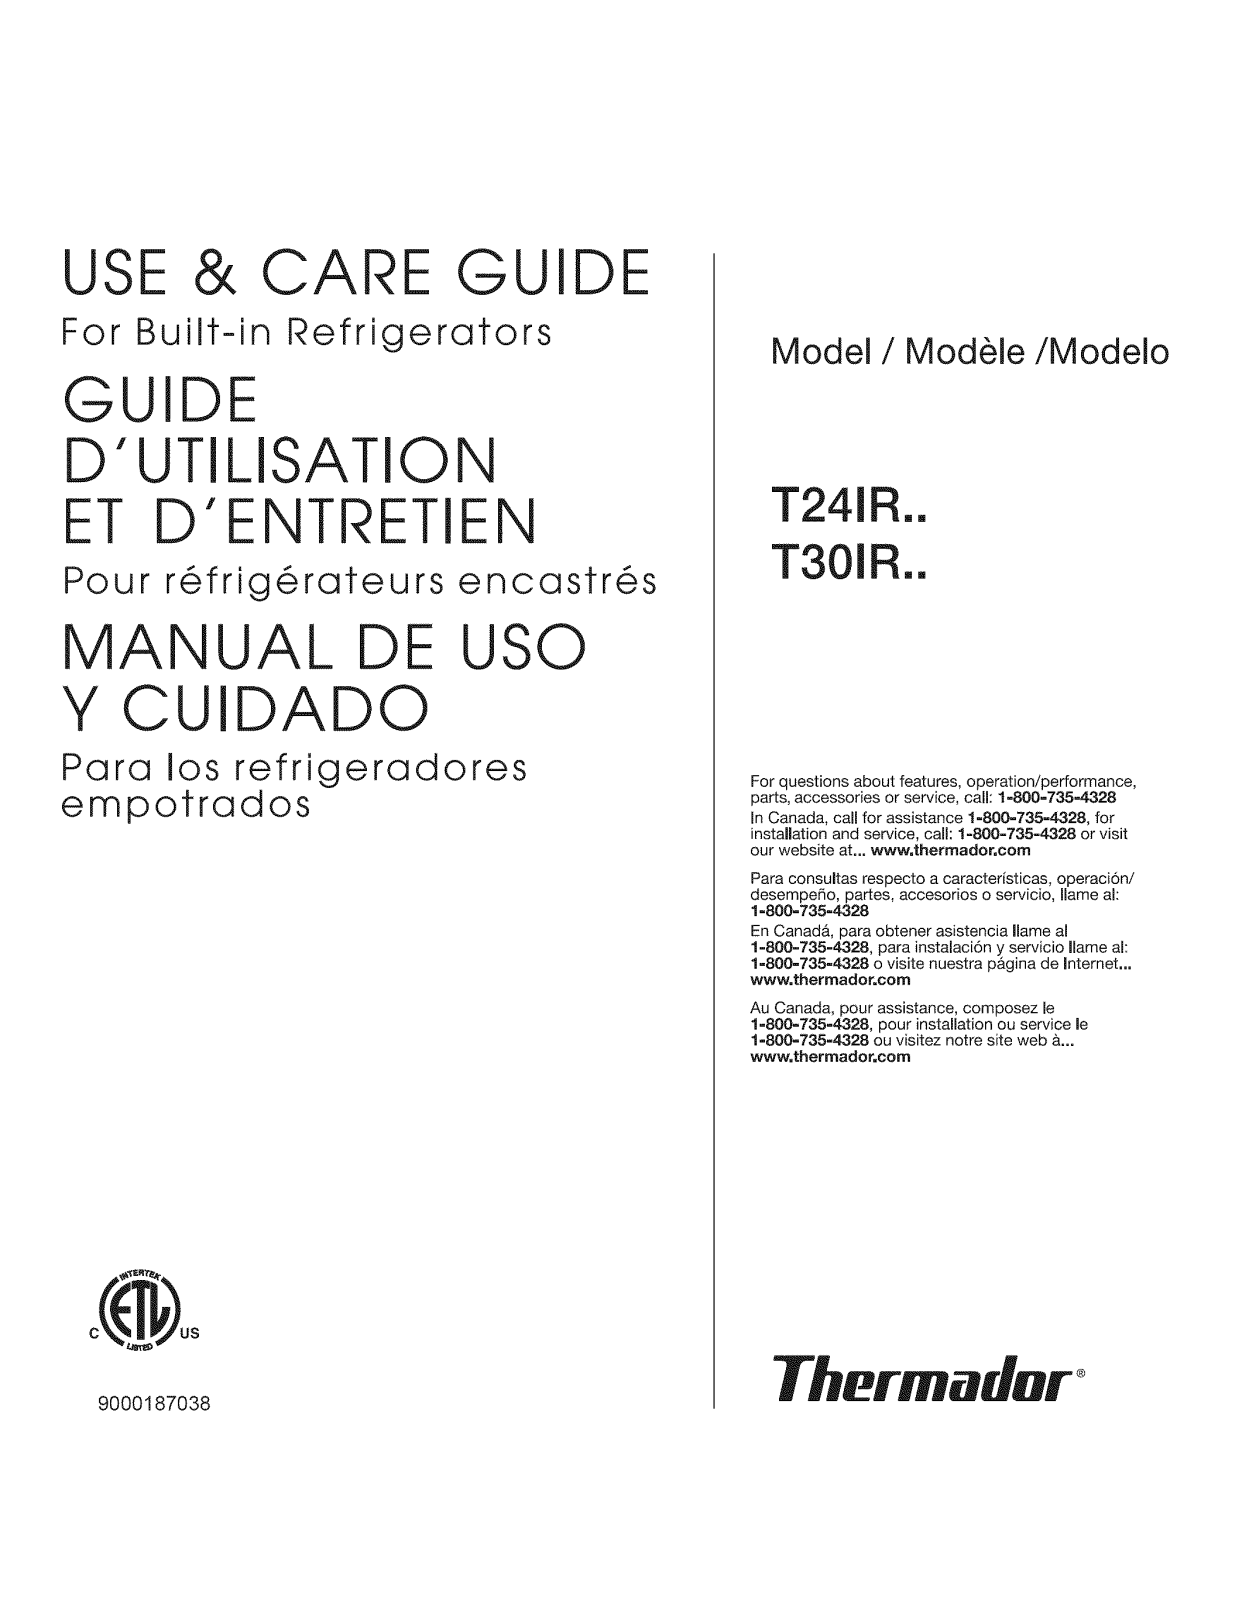 Thermador T30IR70NSP-05, T30IR70FSS-01, T30IR70CSS-01, T24IR70PSS-01, T24IR70NSP/21 Owner’s Manual